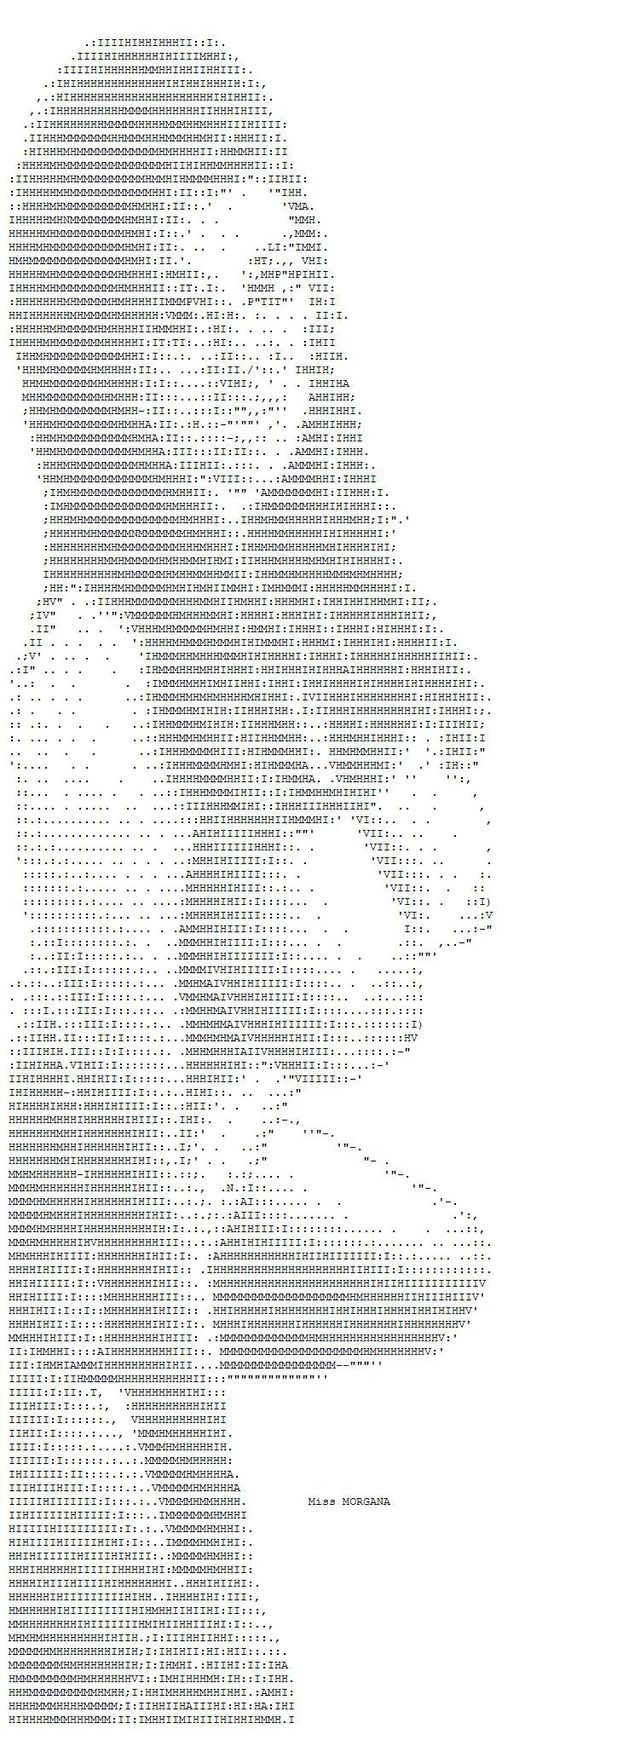 ASCII erotic images - 07